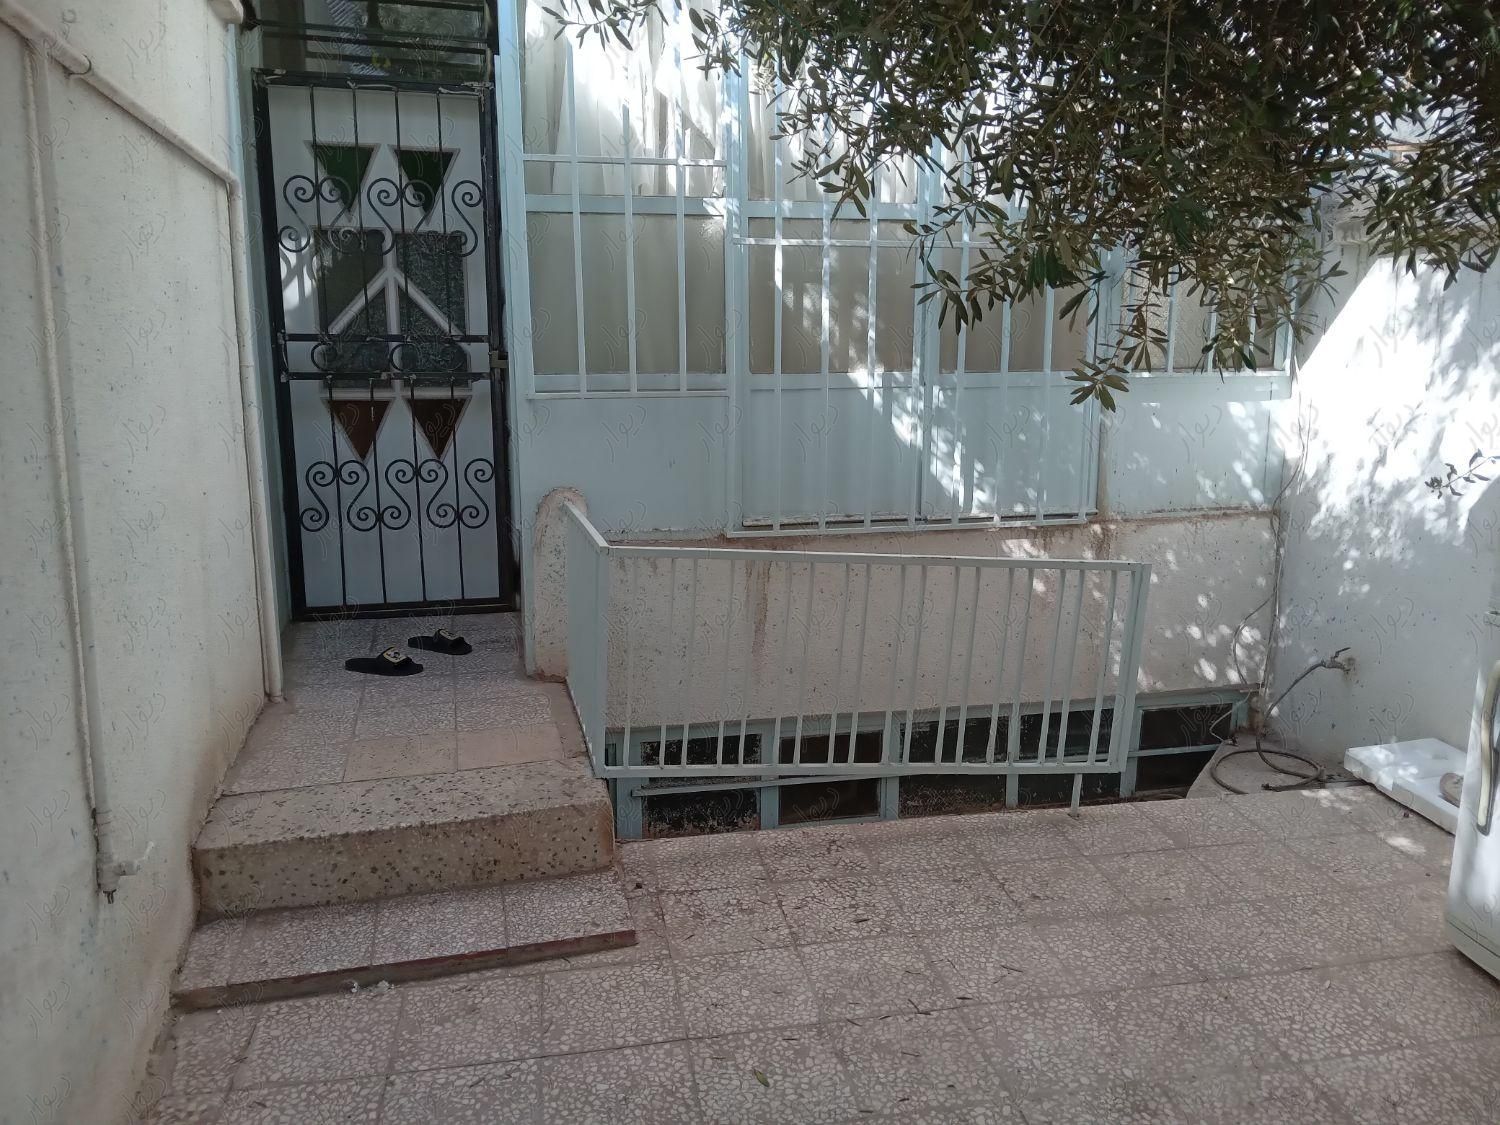 منزل مسکونی درقم خیابان امیر کبیر کوچه۱۵|فروش خانه و ویلا|قم, حرم|دیوار